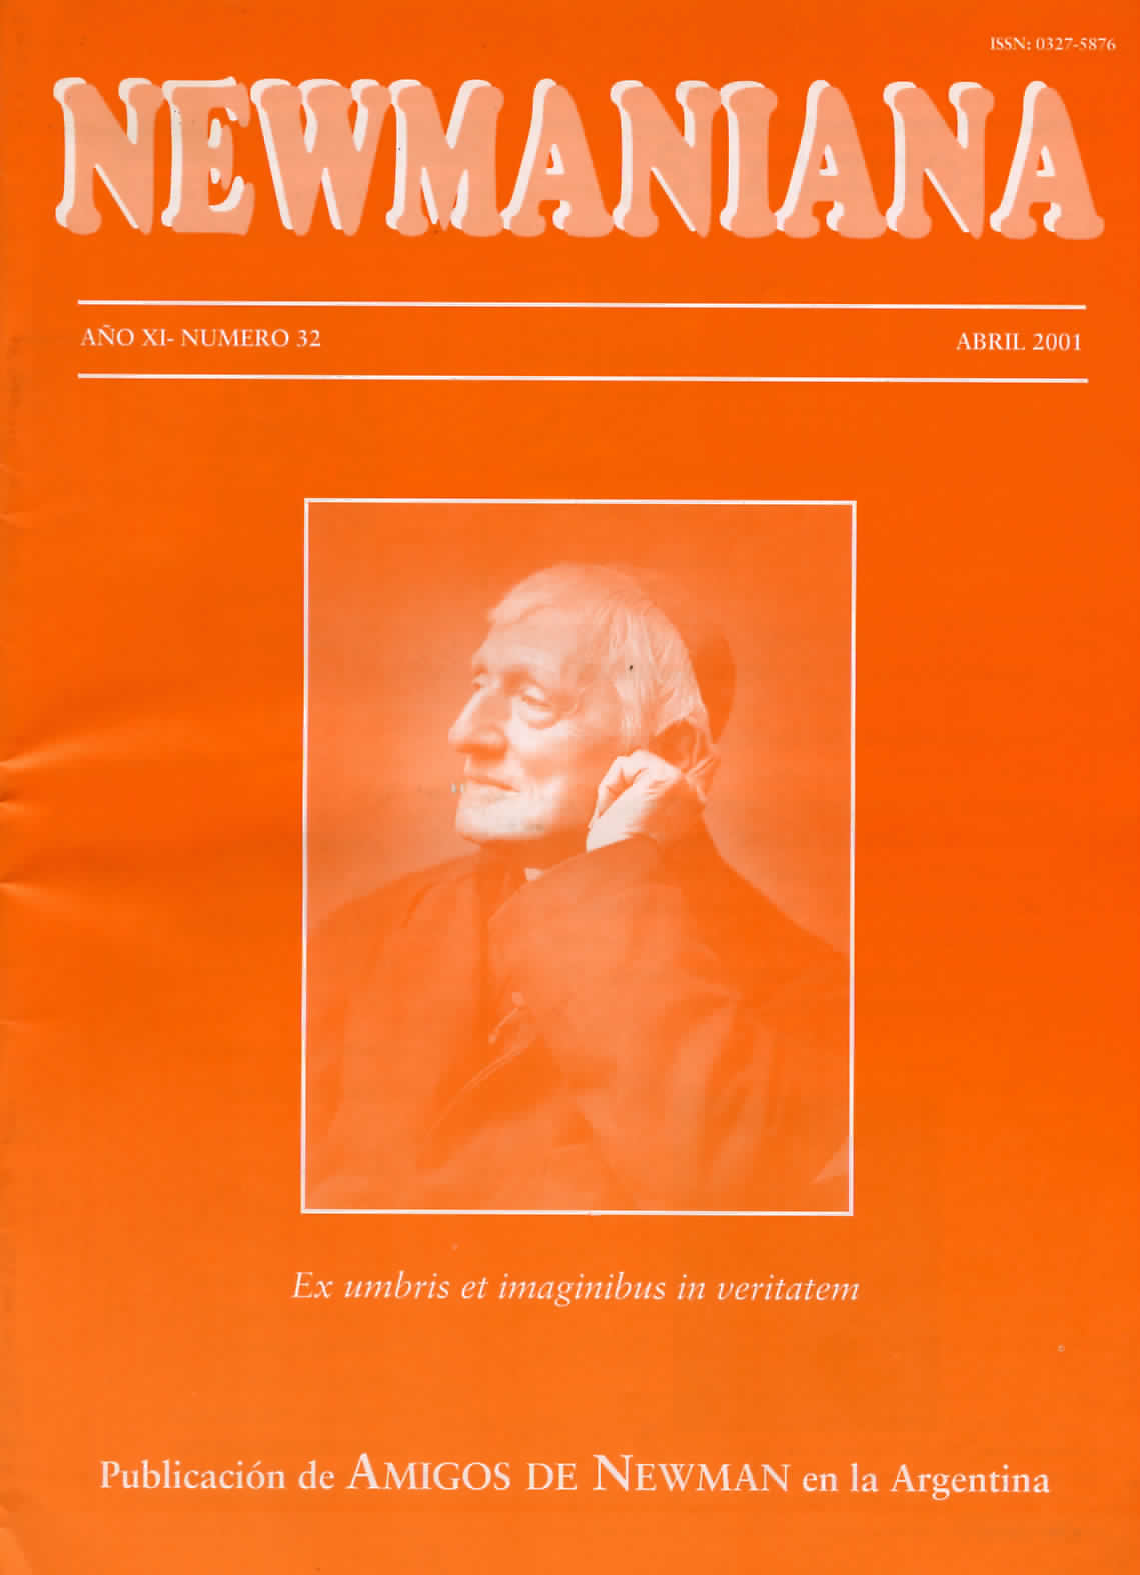 Revista Newmaniana N° 32 – Abril 2001